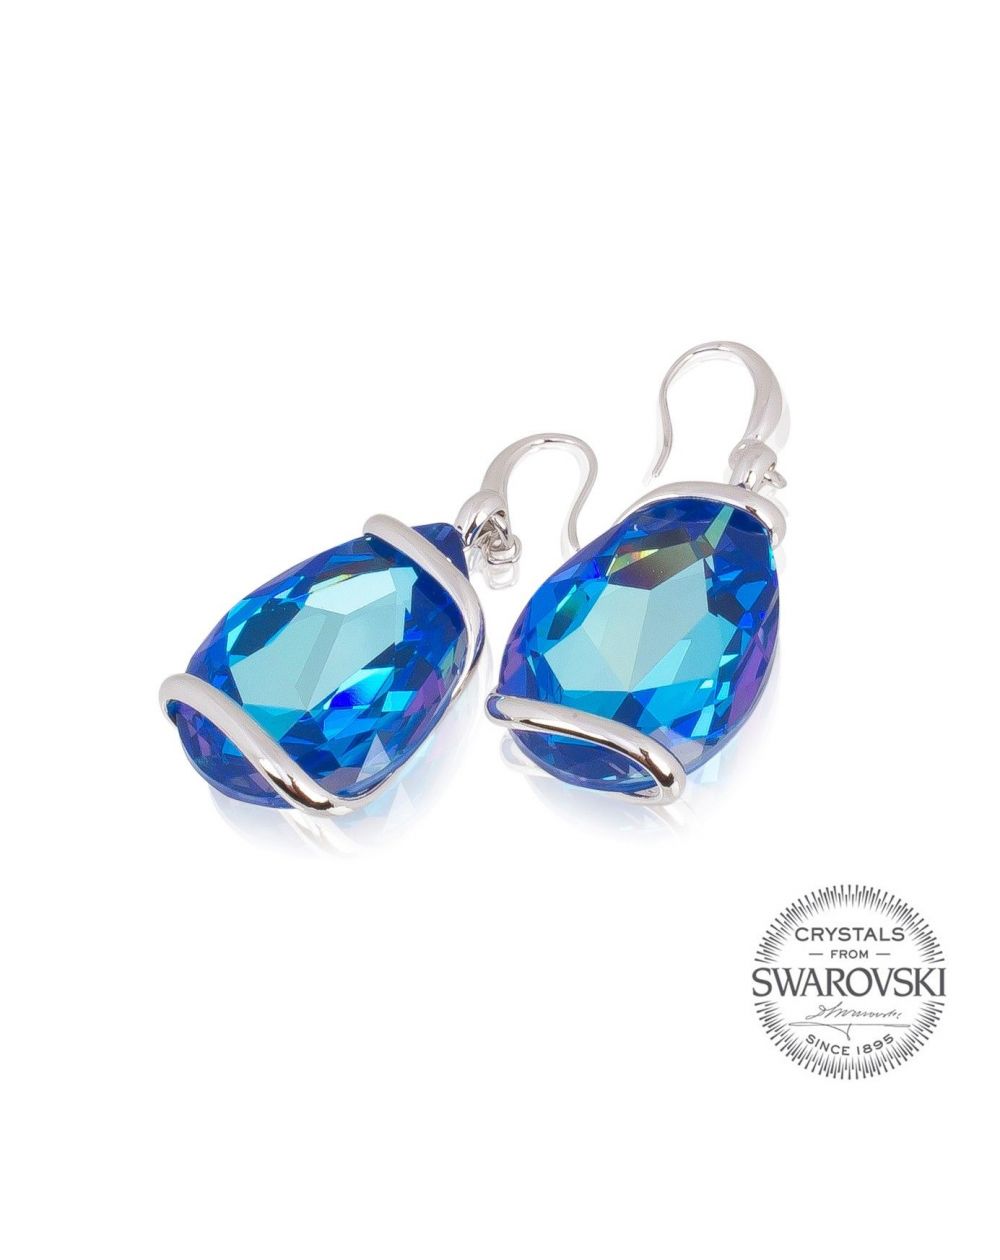 Boucles d'oreille Andrea Marazzini cristal Swarovski - Blue Delite